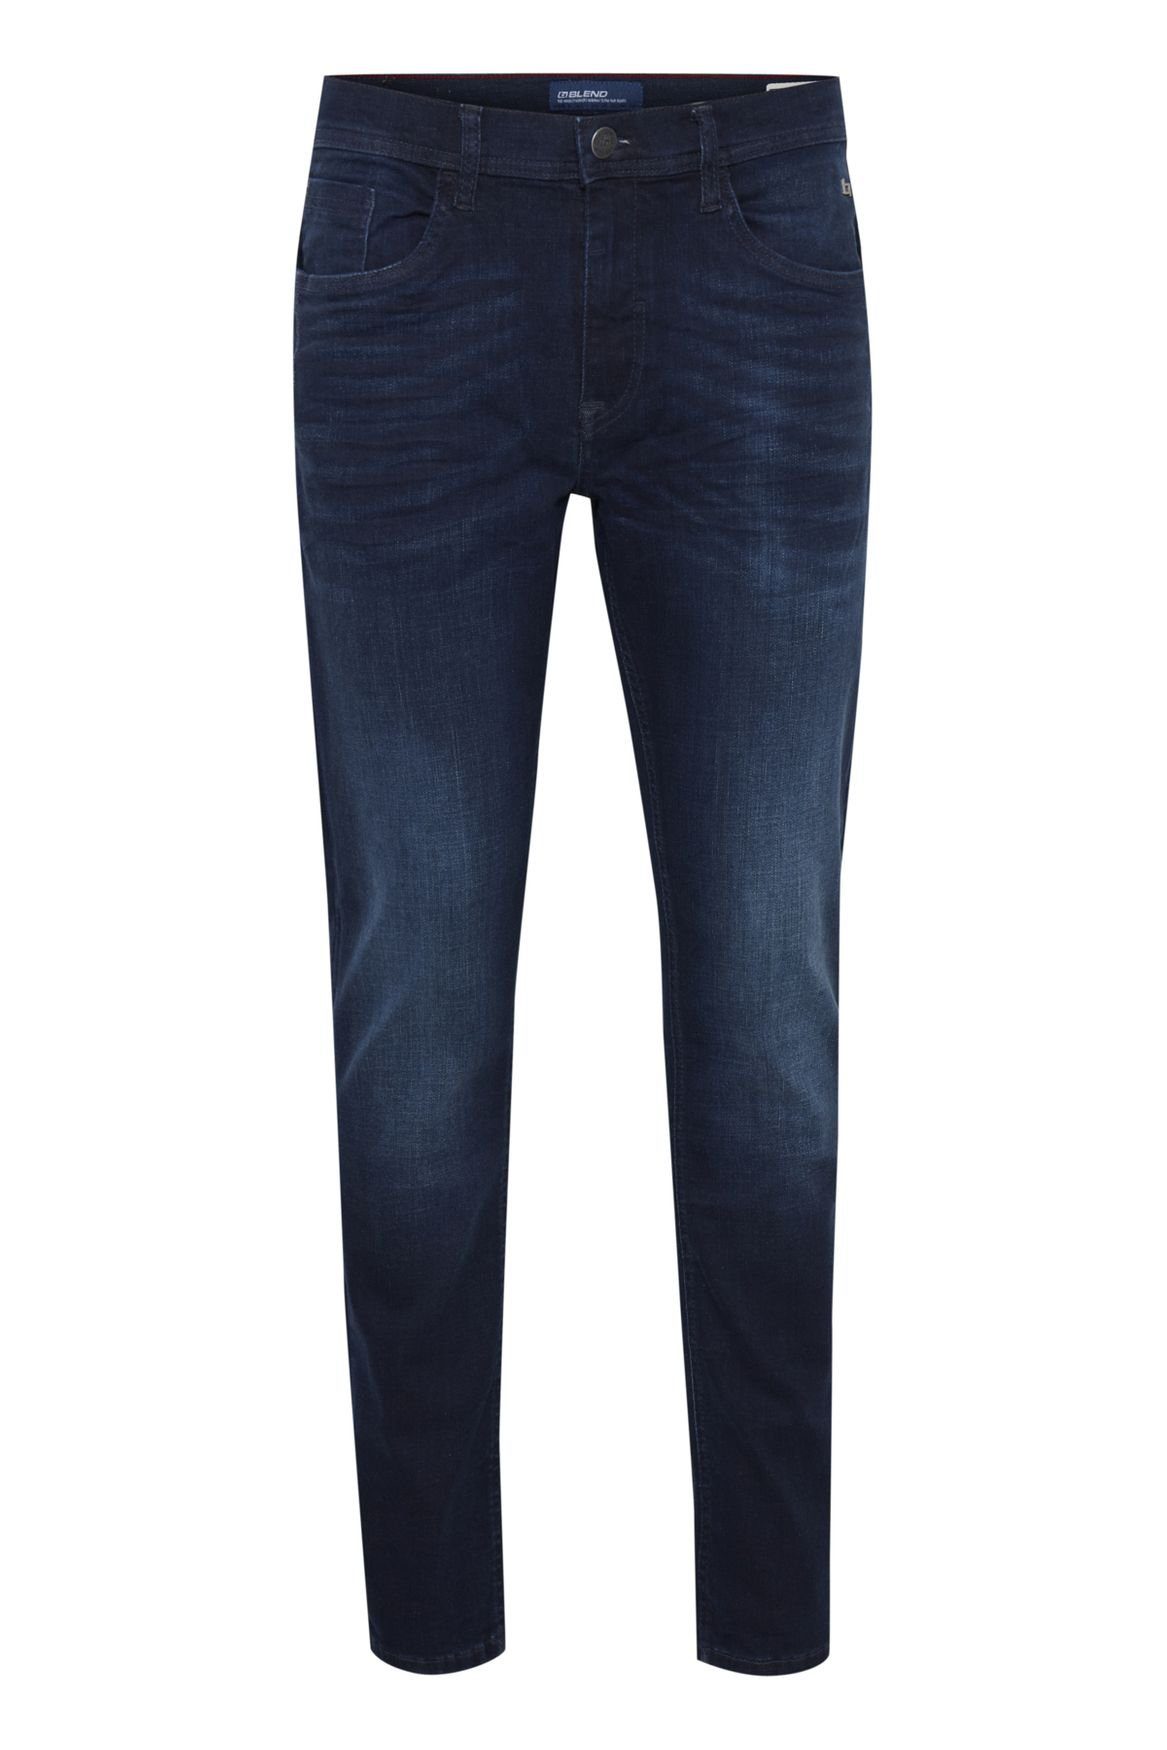 Blend Slim-fit-Jeans Slim Fit Jeans Basic Denim Hose Stoned Washed TWISTER FIT 5196 in Dunkelblau